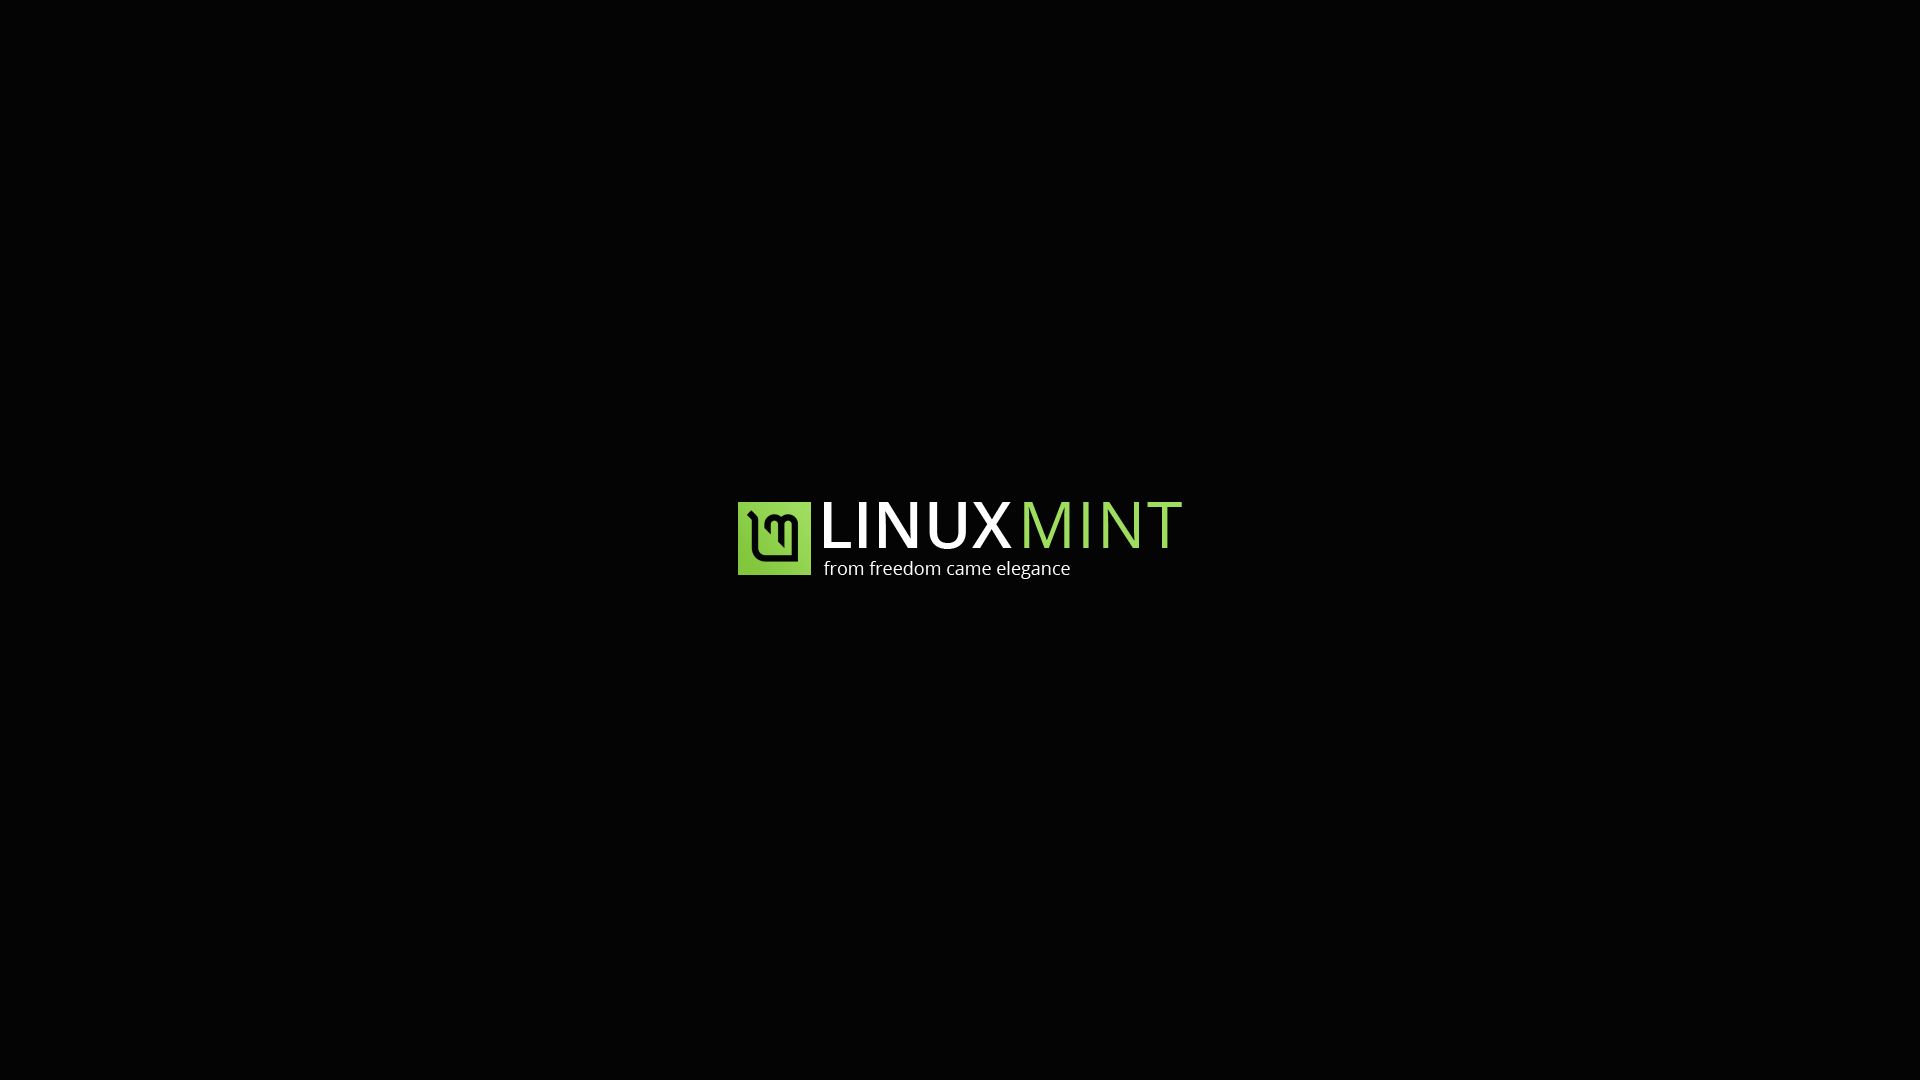 Linux Mint Wallpaper Image